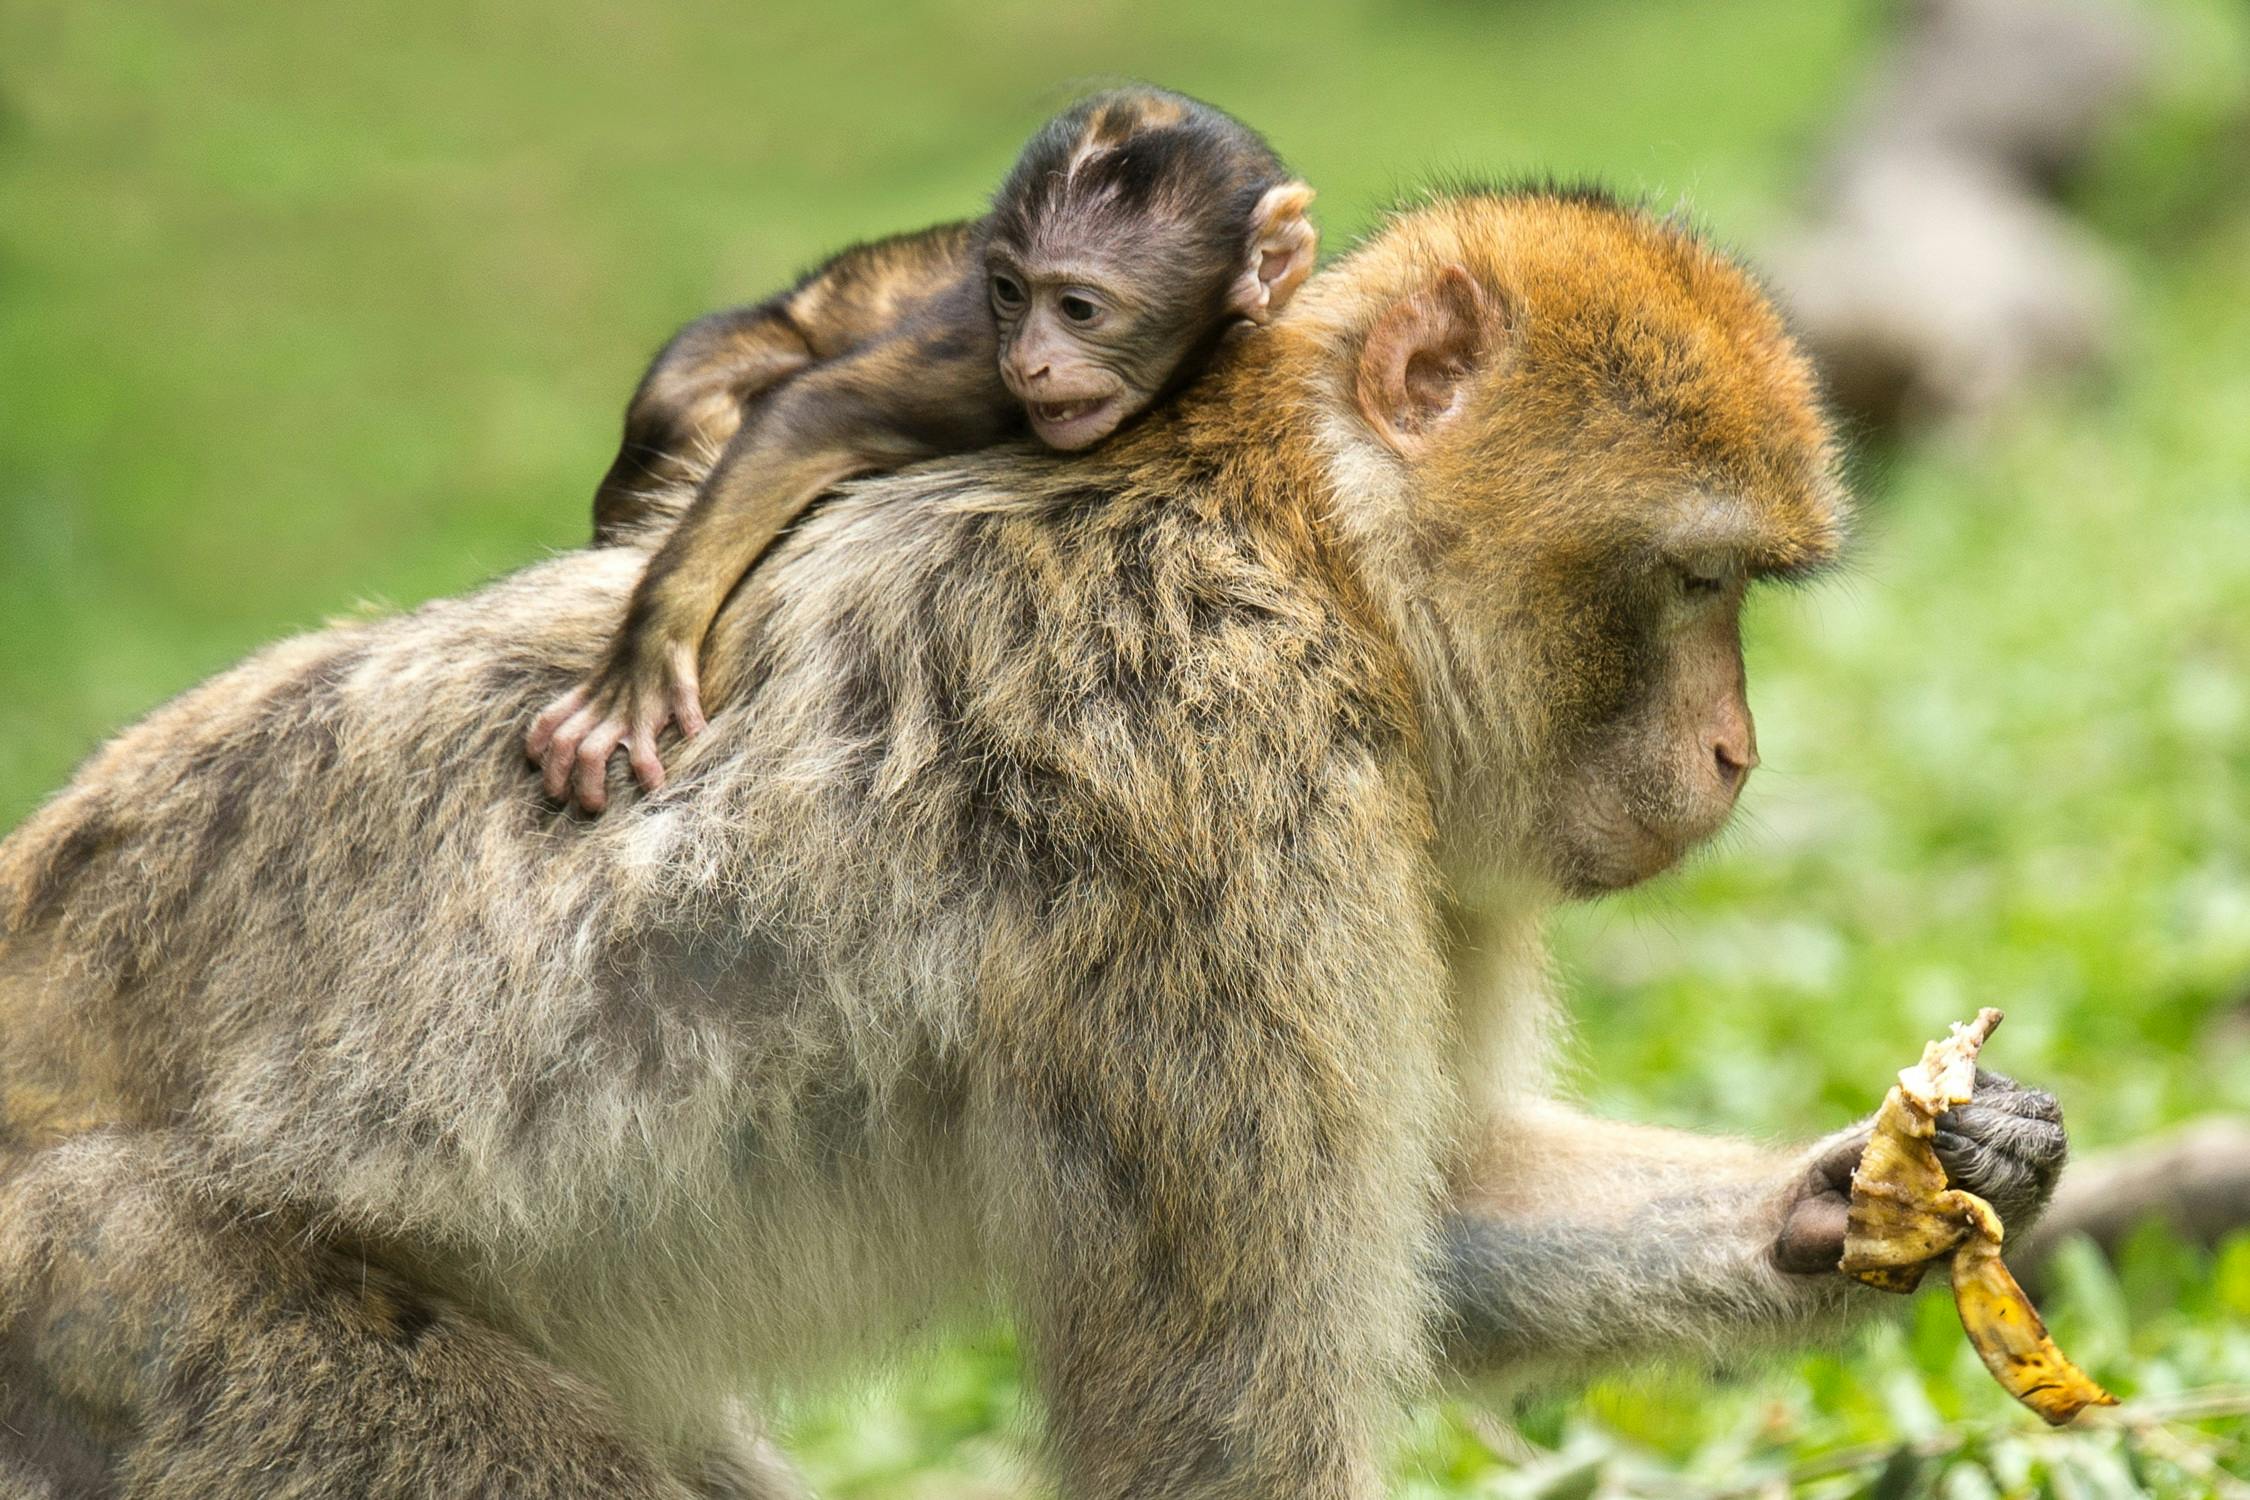 50+ Free Monkey Life & Monkey Images - Pixabay